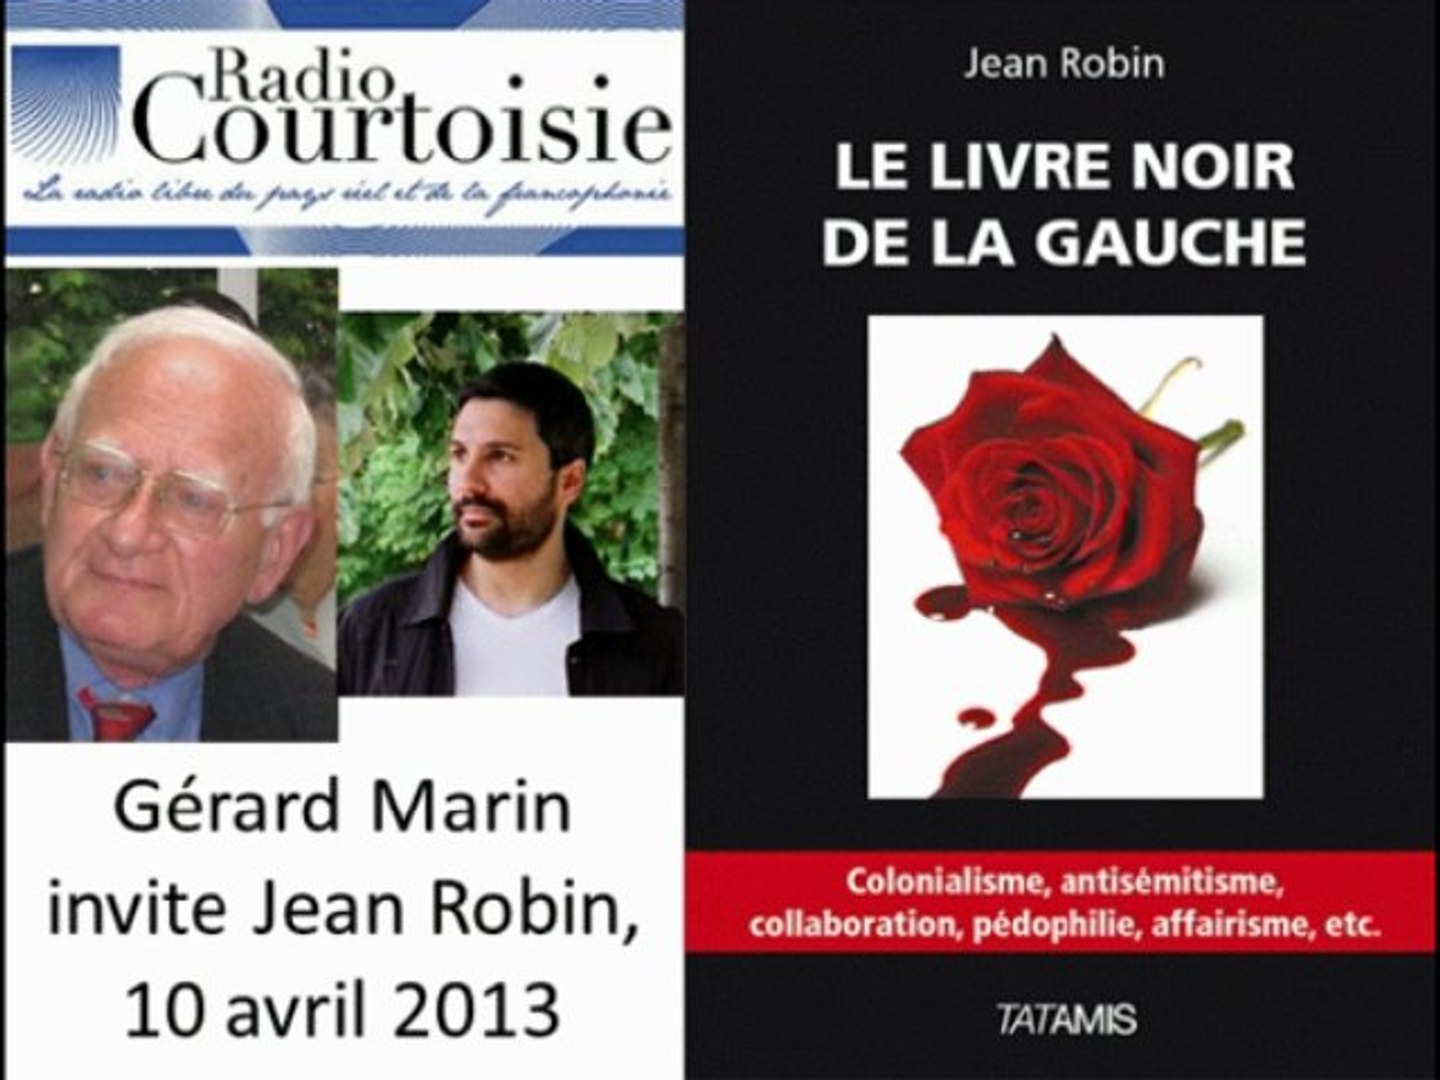 Interview de Jean Robin pour le livre noir de la gauche sur Radio Courtoisie  - Vidéo Dailymotion